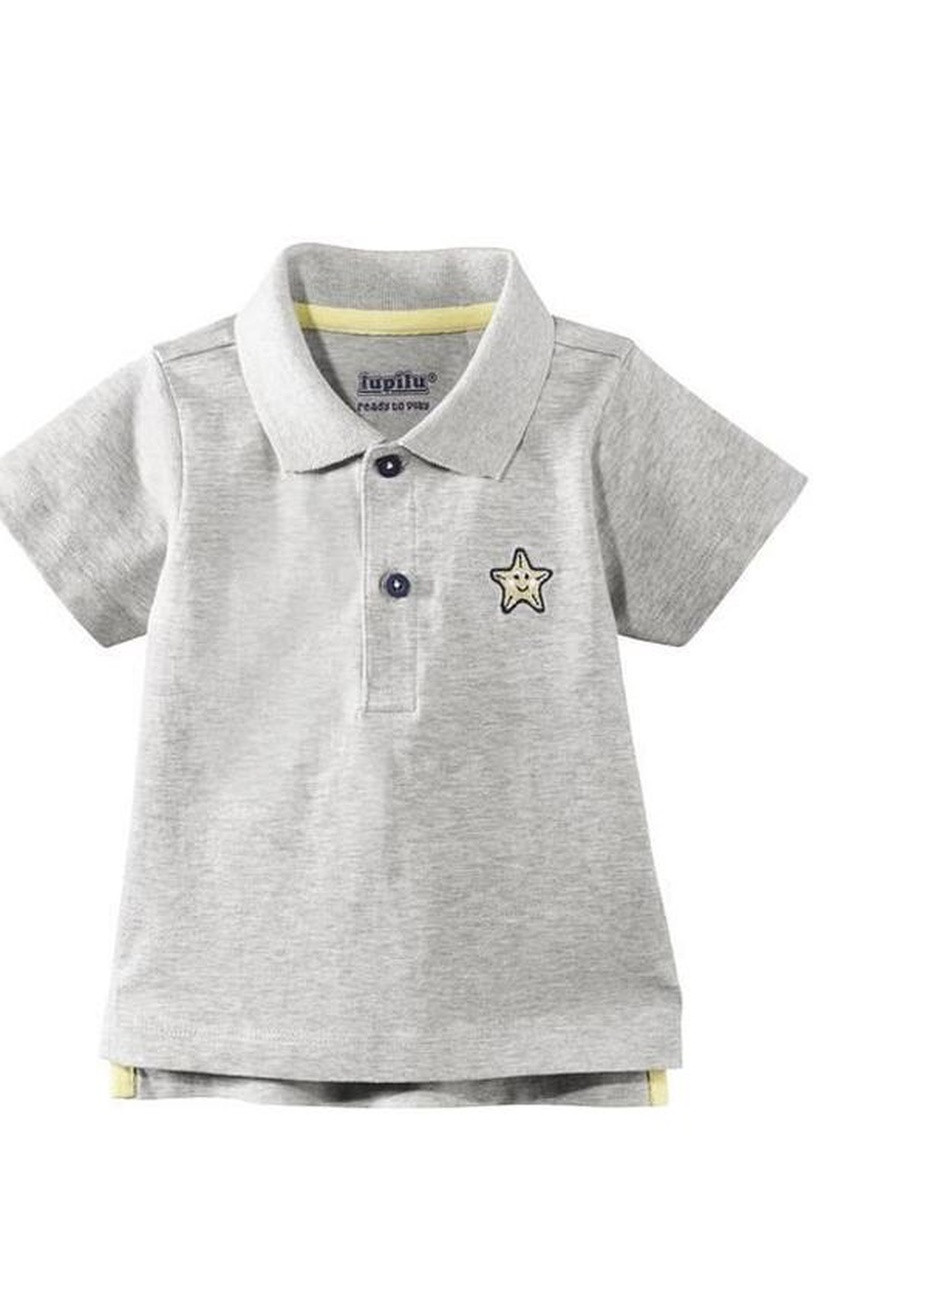 Серая детская футболка-стильная хлопковая футболка поло для мальчика германия для мальчика Lupilu